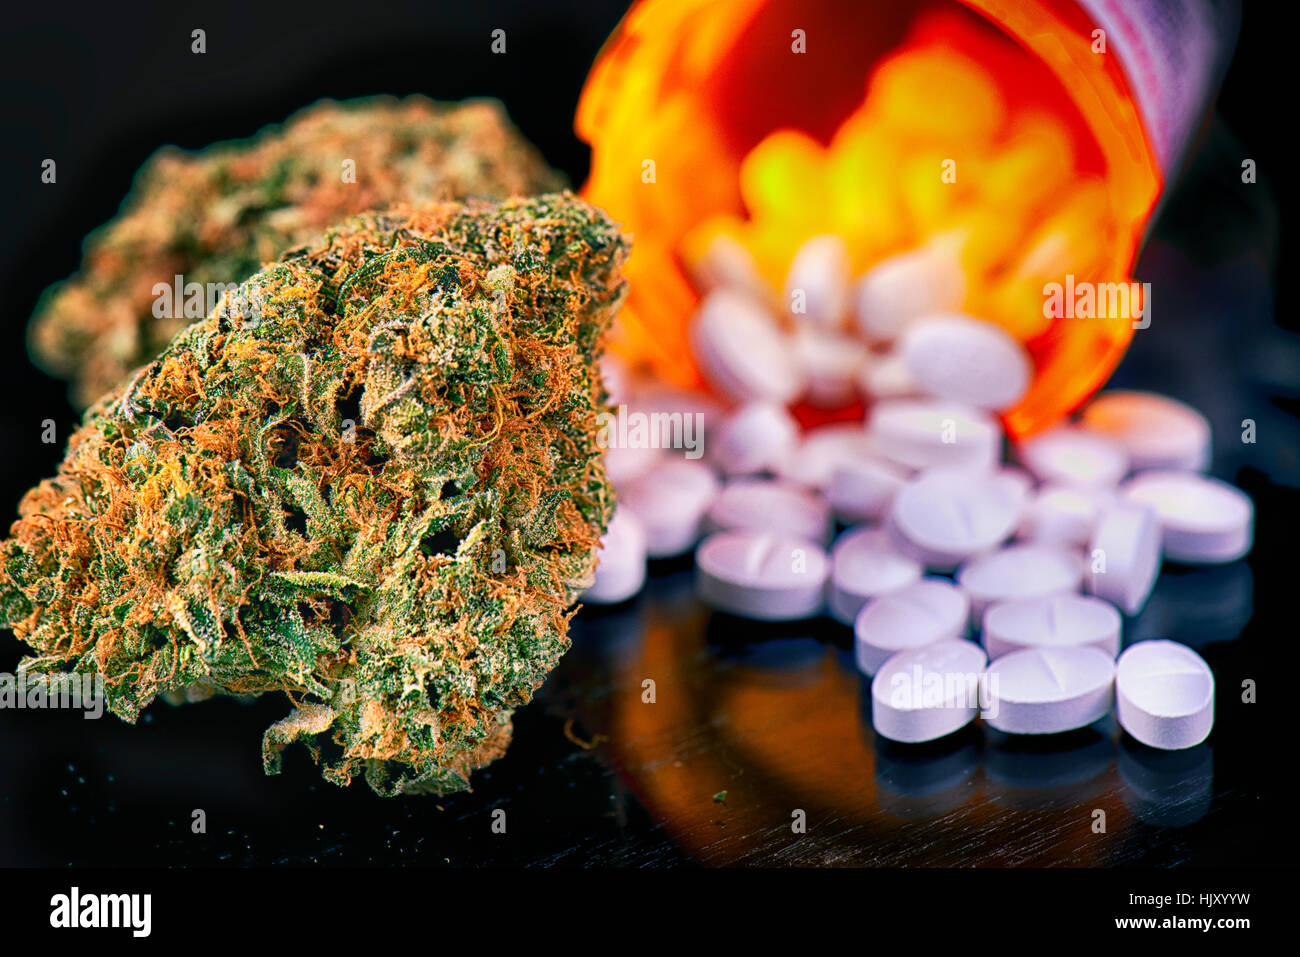 Detail des Cannabis Knospen und Verschreibungen Pillen über reflektierende Oberfläche - medizinisches Marihuana Apotheke Konzept Stockfoto